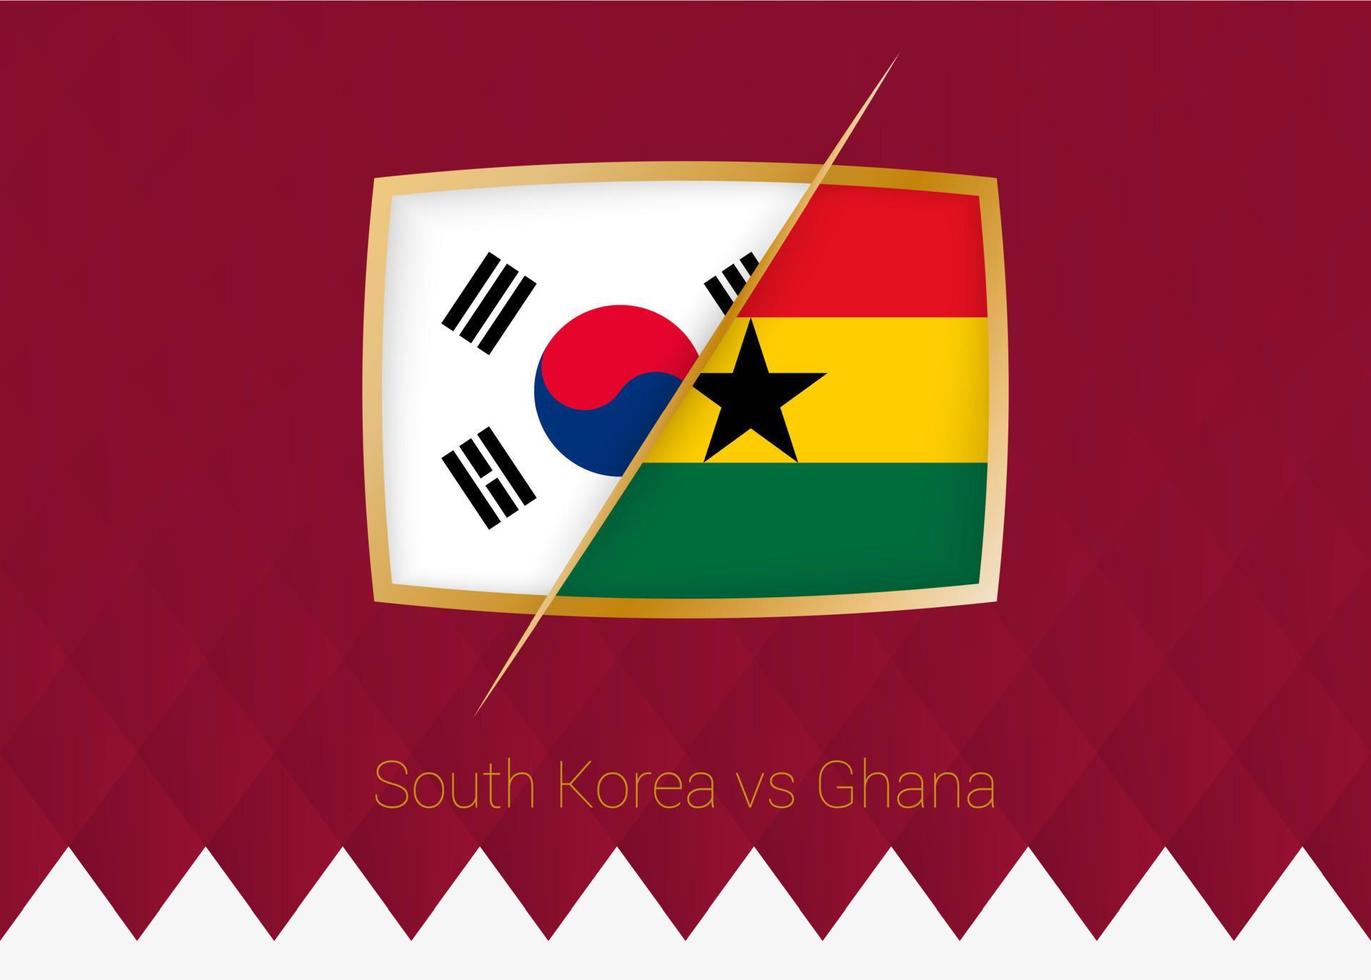 corée du sud contre ghana, icône de la phase de groupes de la compétition de football sur fond bordeaux. vecteur